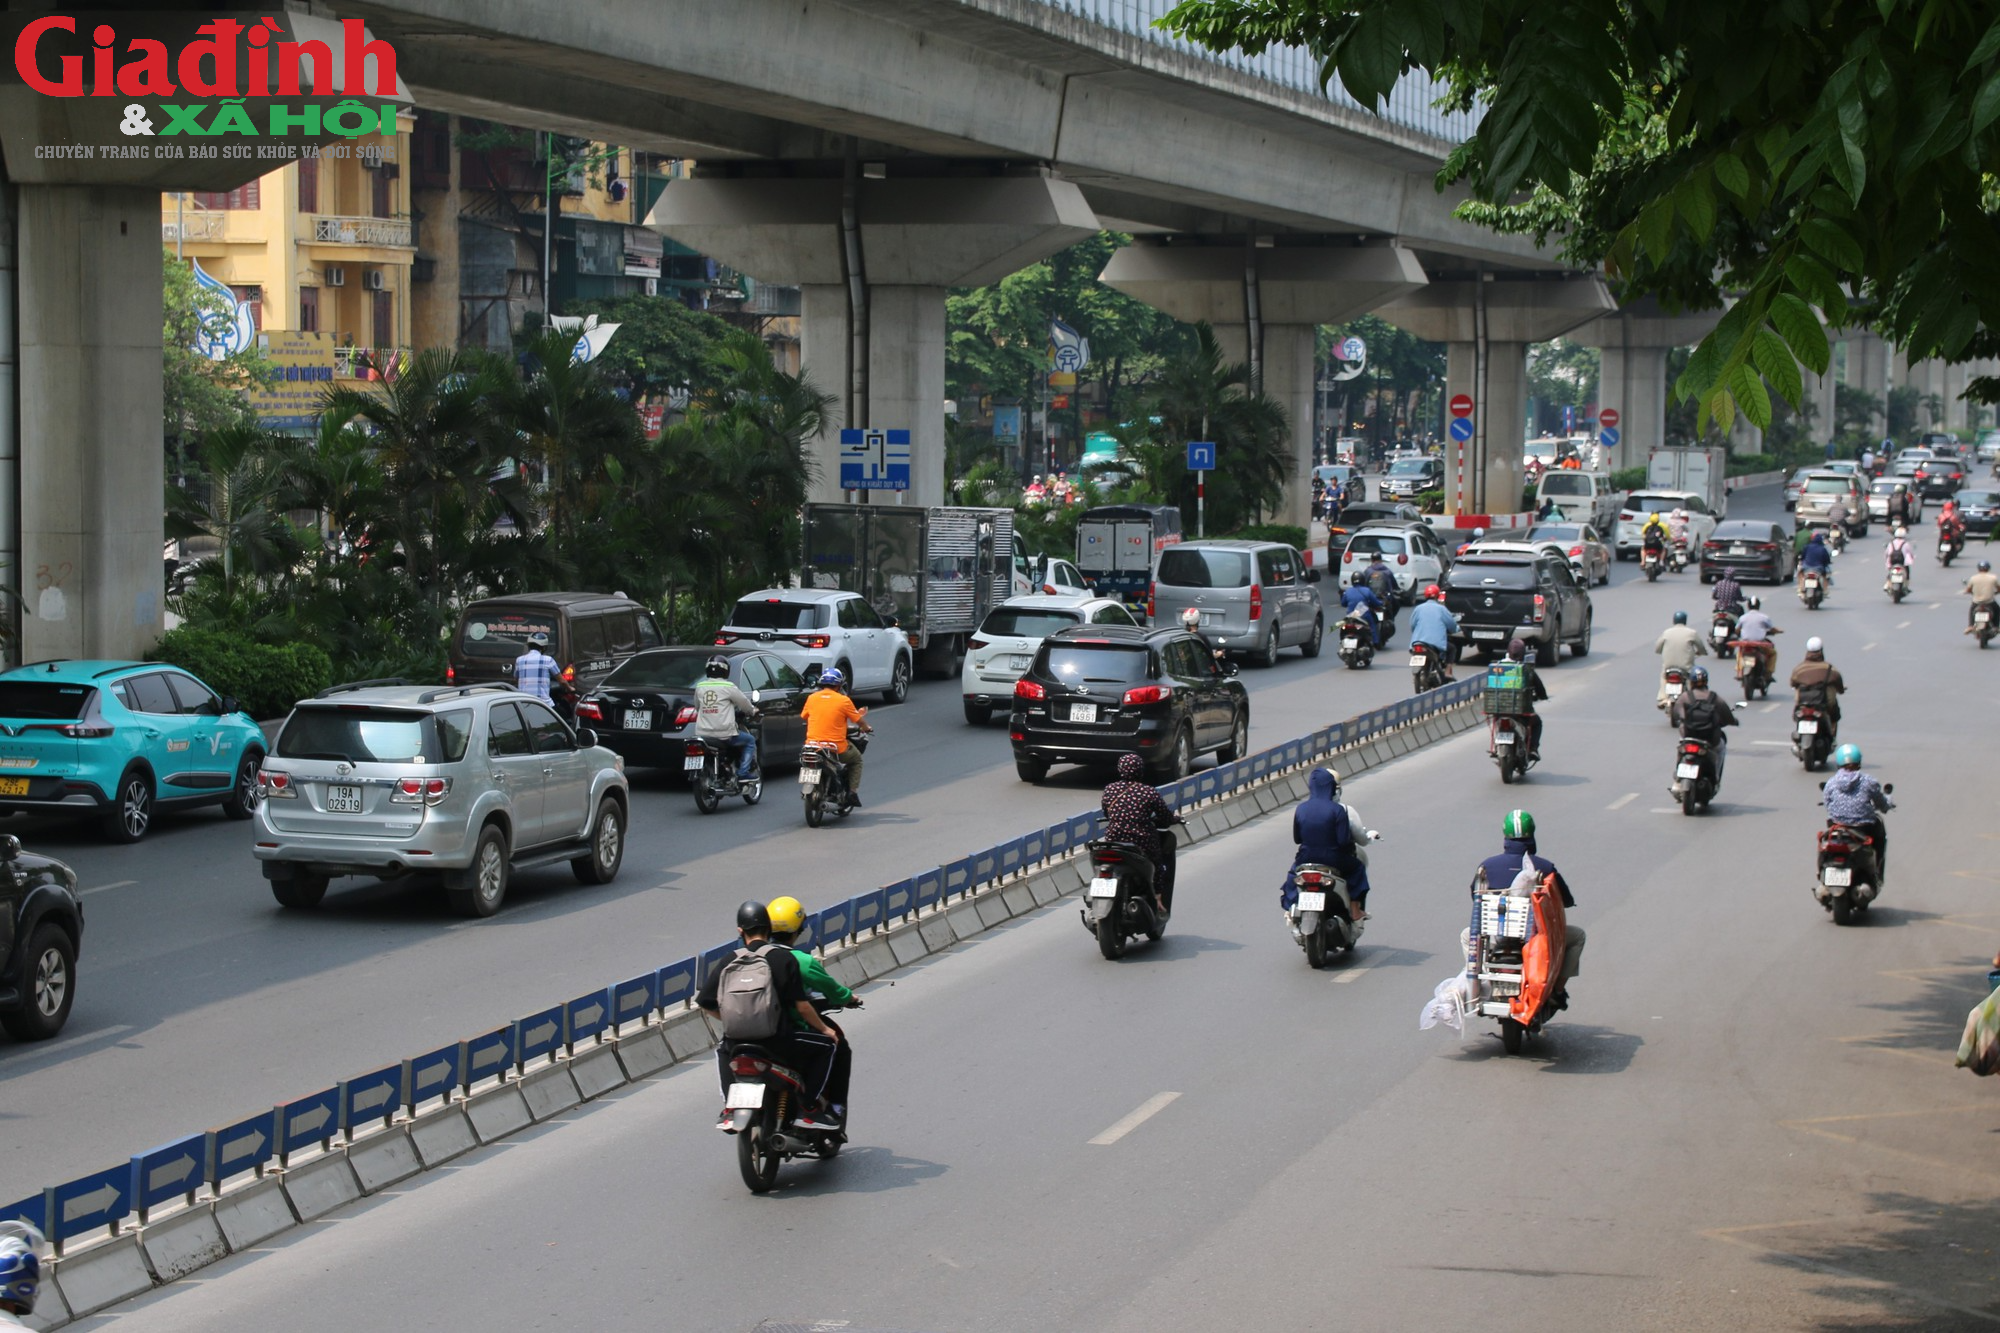 Sau gần một năm thí điểm, cột phân làn gãy đổ, người dân vẫn mạnh ai nấy đi trên đường Nguyễn Trãi - Ảnh 2.